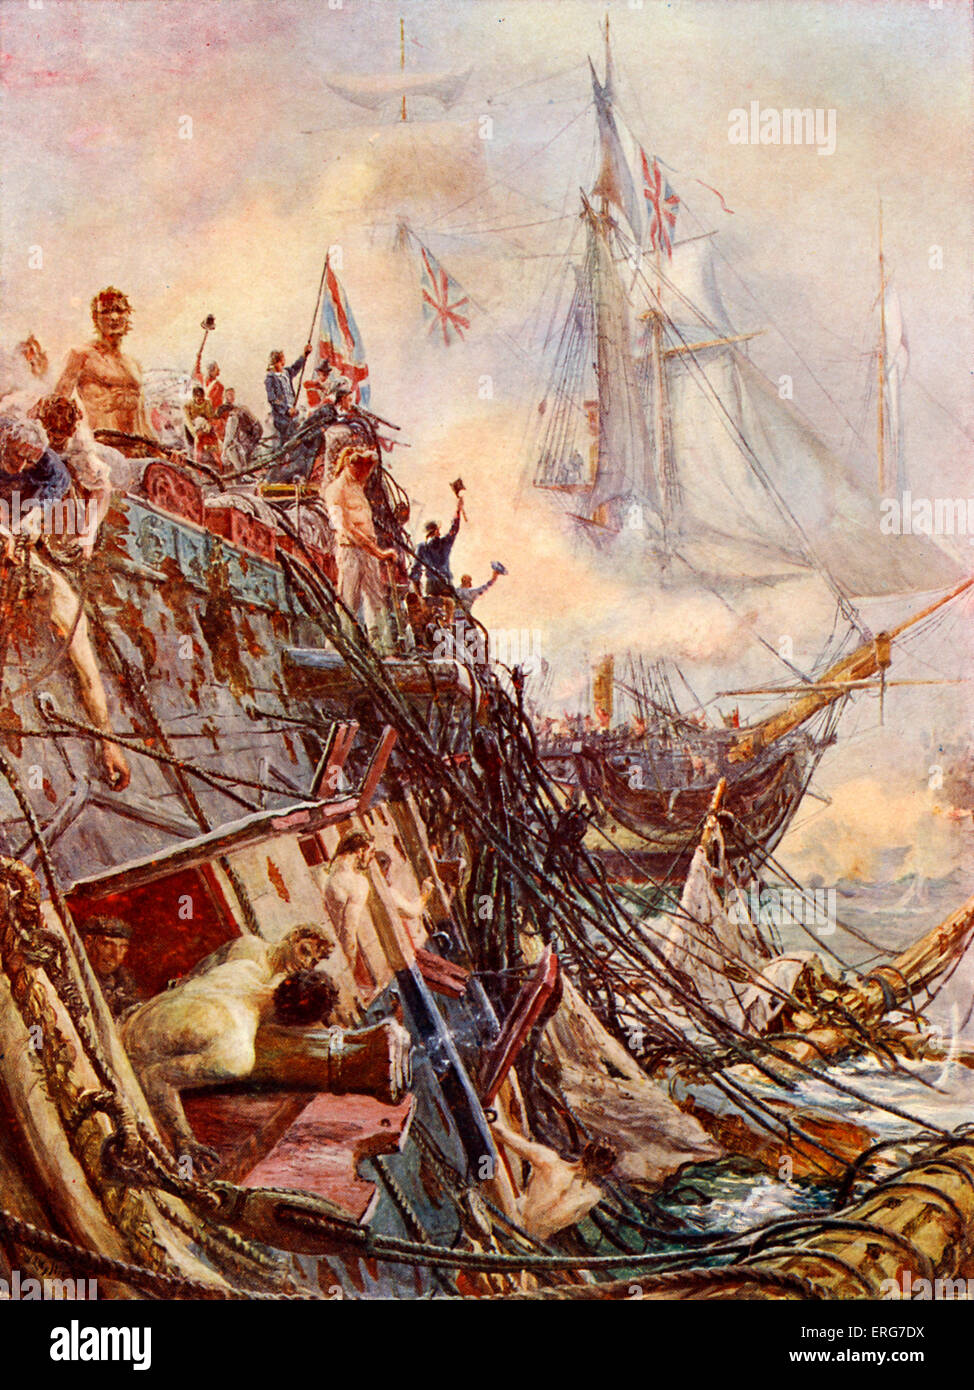 "Verkrüppelt aber unbesiegten" von W L Wyllie. Die HMS Belleisle war der einzige britische Schiff zu Demasted in der Schlacht von Trafalgar, behielt aber ihre Flagge für 45 Minuten, bevor sie durch den Rest der Flotte gerettet wurde. William Lionel Wyllie, englischer Maler, 5. Juli 1851 - 6. April 1931. Stockfoto